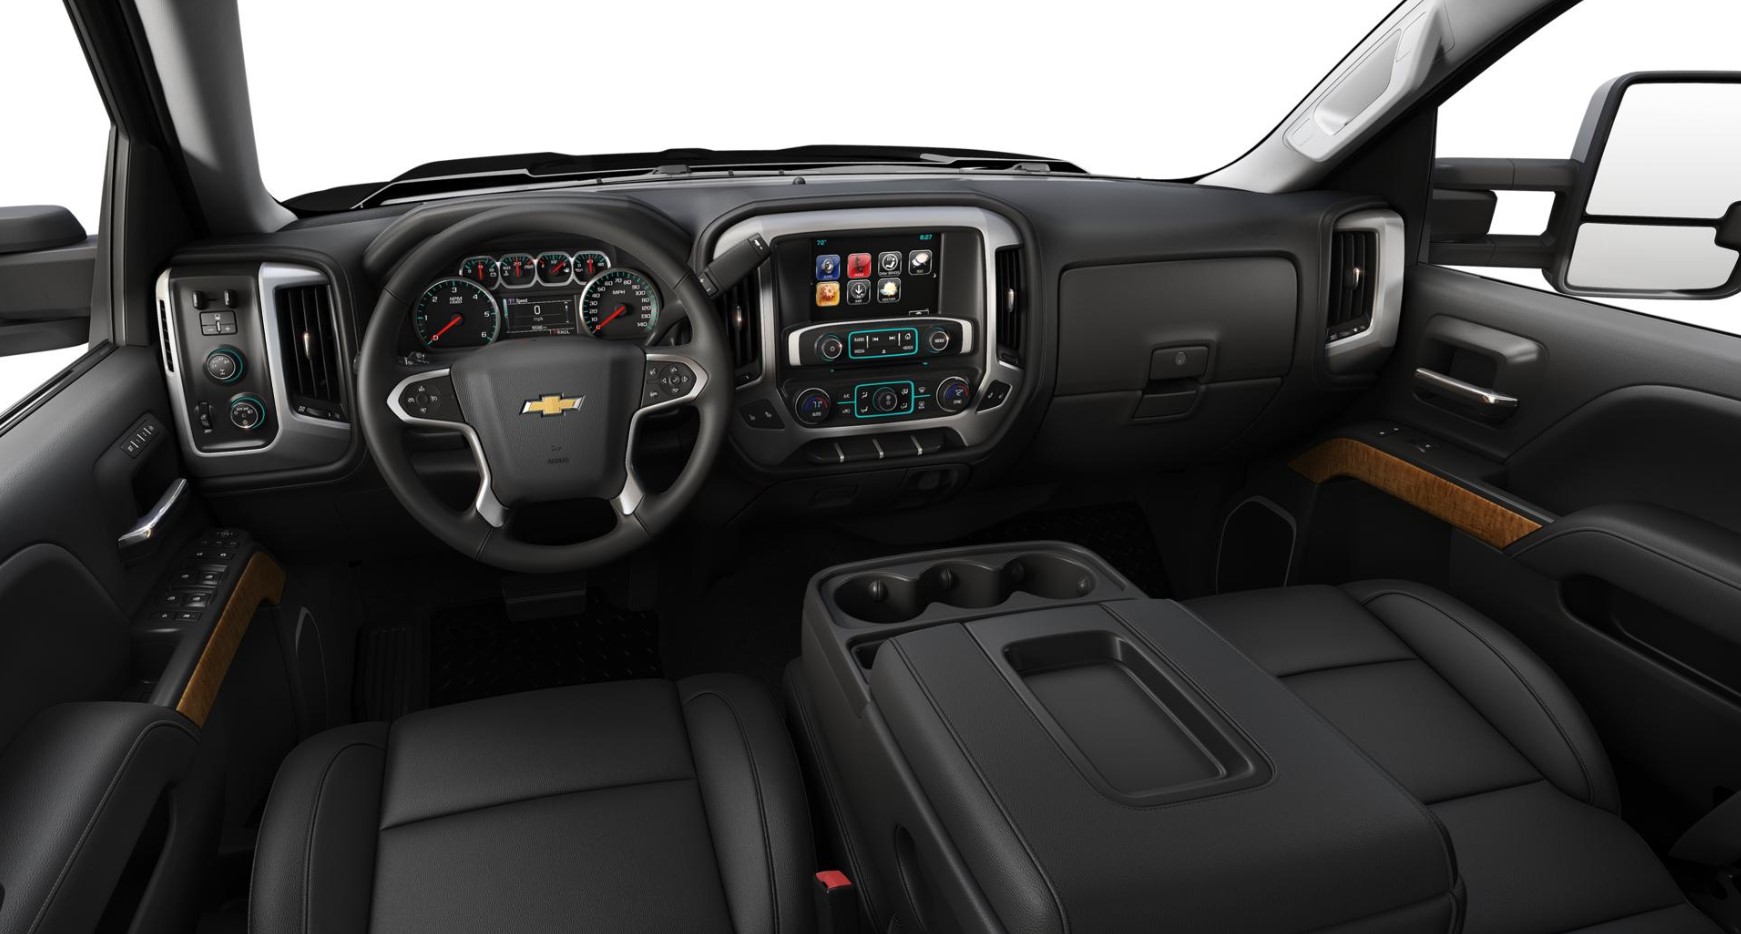 2018 Chevrolet Silverado 1500 LTZ Truck Black Leather Interior Picture